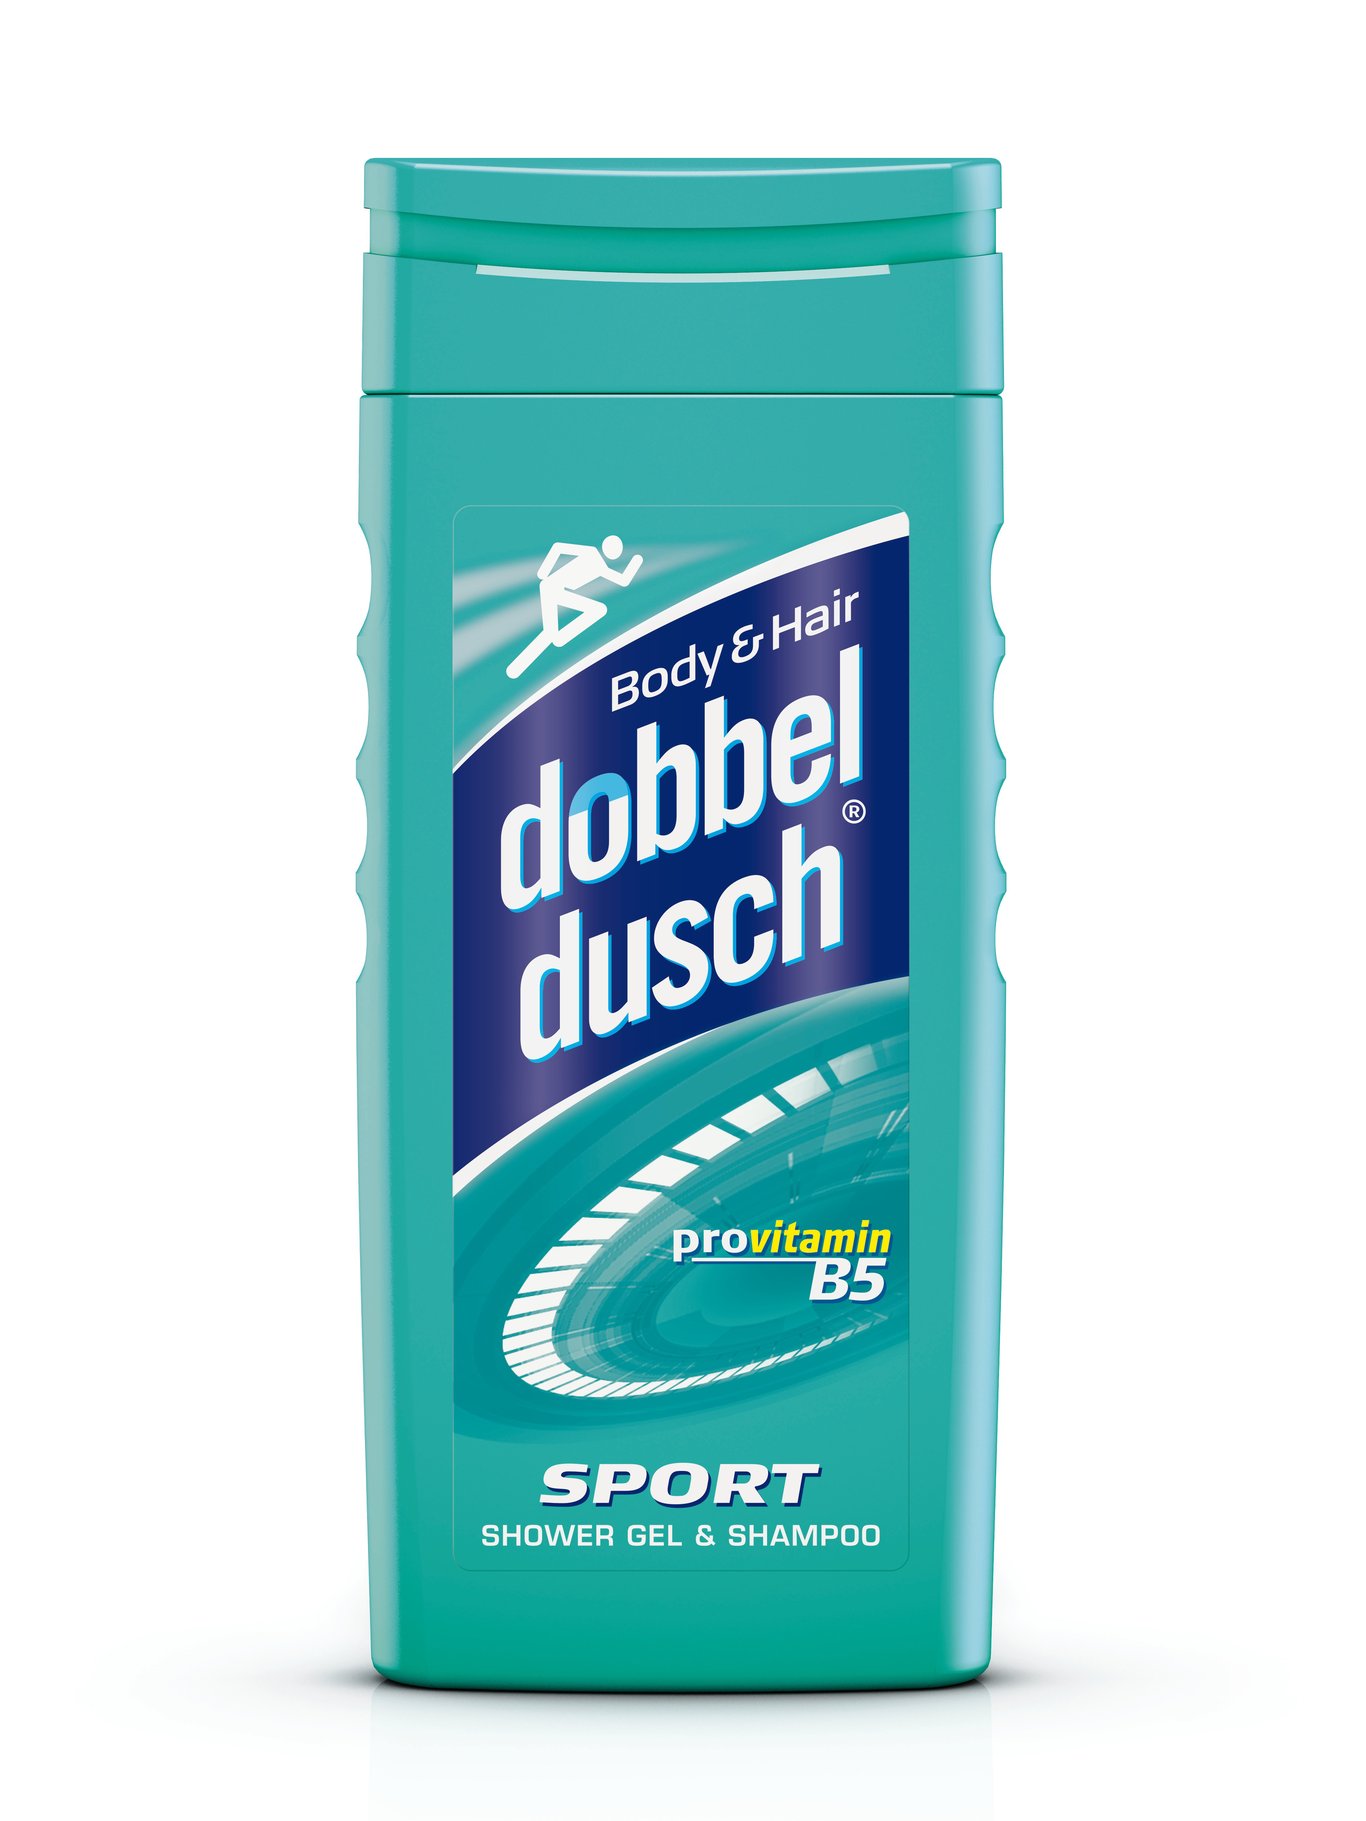 Schampo/Dusch Dubbeldusch Sport 250ml 51020085_1